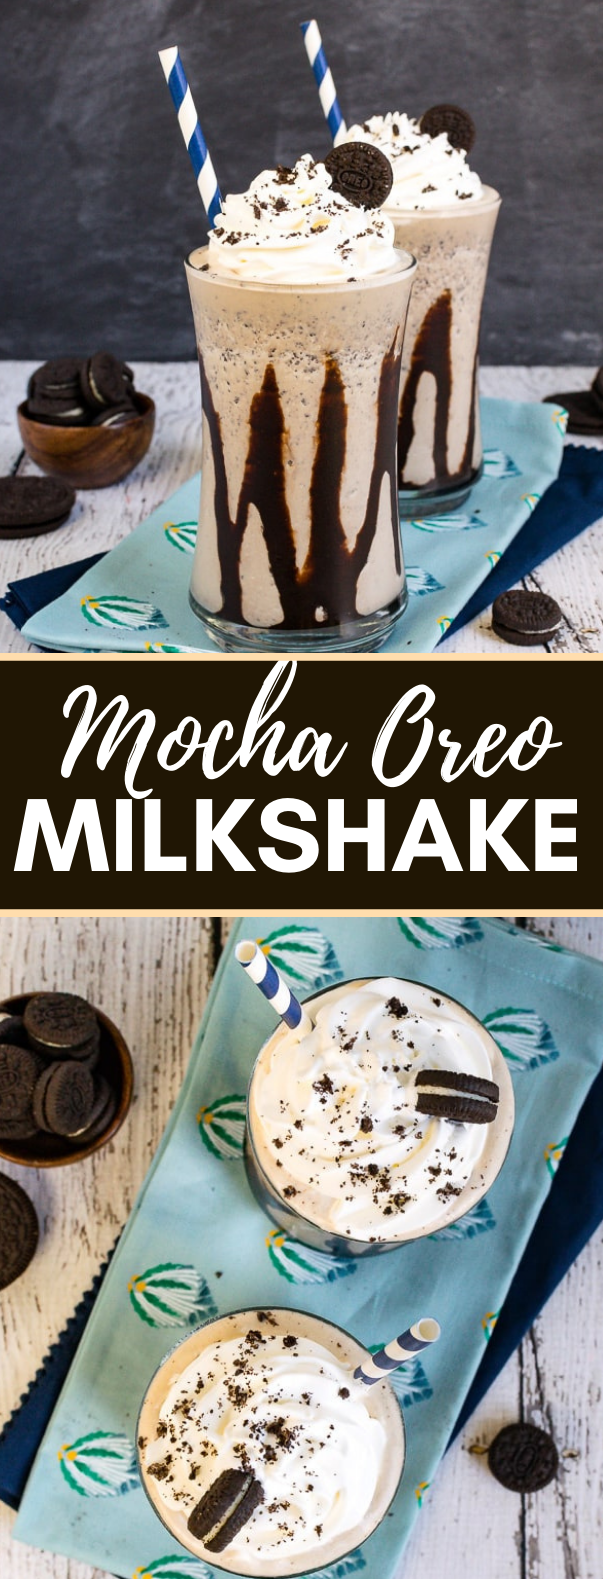 MOCHA OREO MILKSHAKES #drinks #desserts #milkshakes #sweets #summerrecipe 